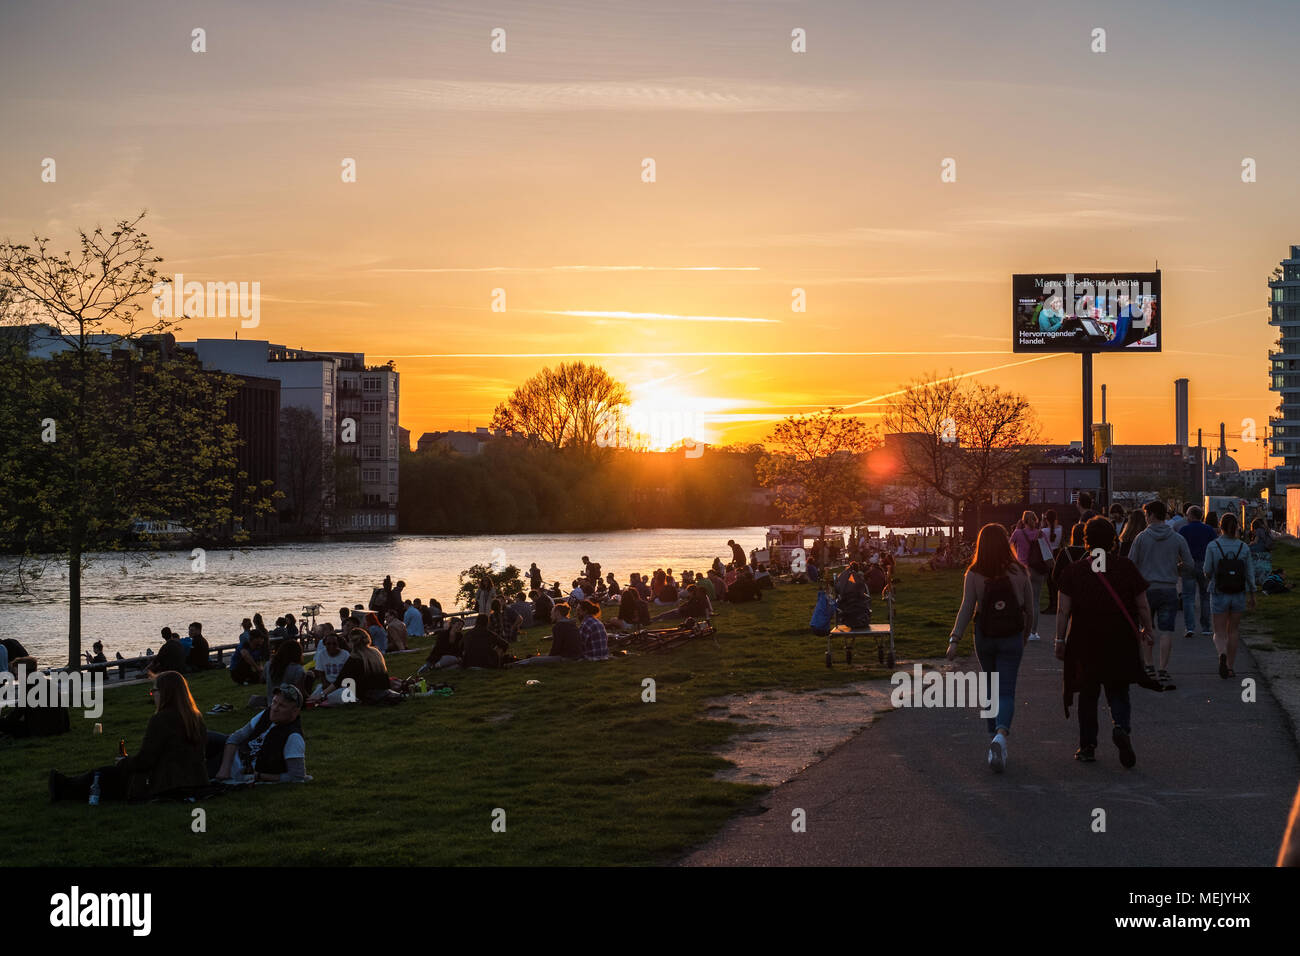 Berlin, Allemagne - avril 2018 : des jeunes à la marche ( Mur de Berlin East Side Gallery) sur journée d'été soirée avec sunset sky Banque D'Images